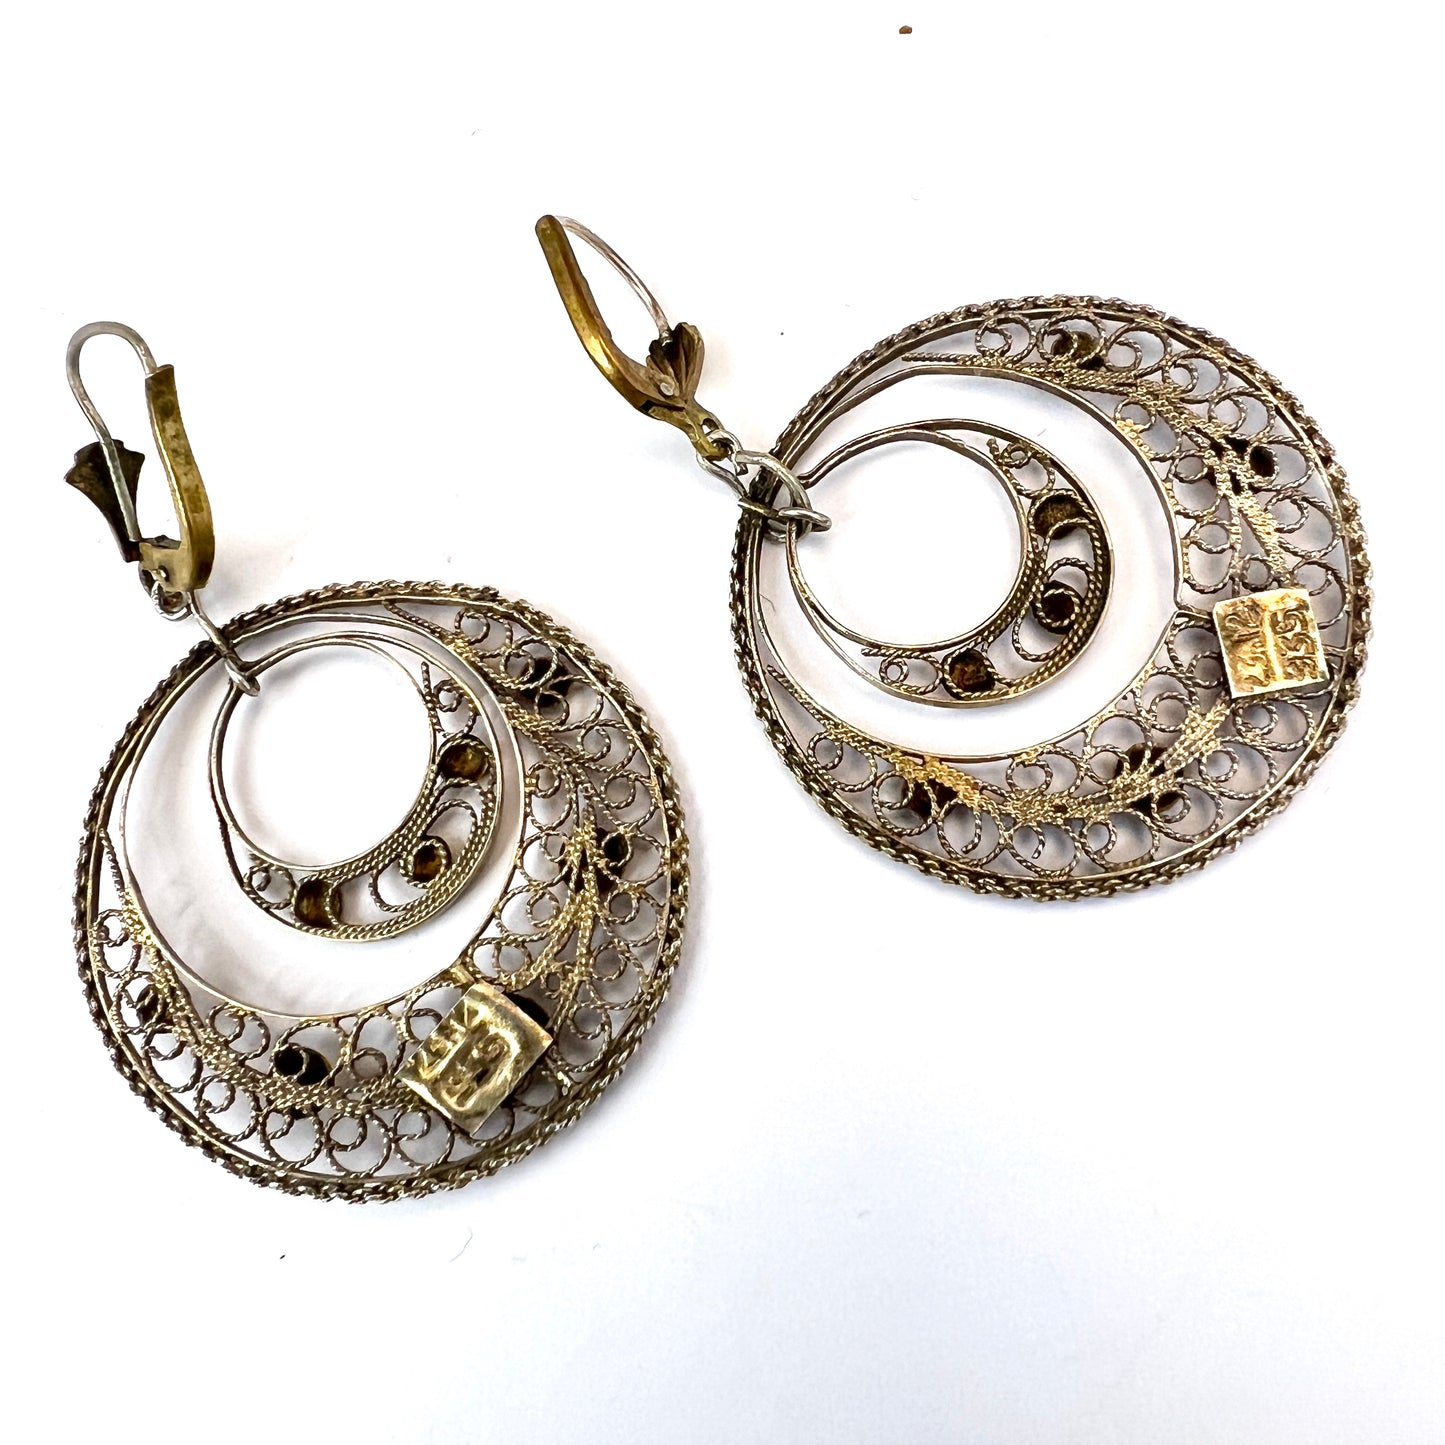 Eastern Mediterranean 1950-60s, Vintage 935 Silver Earrings.